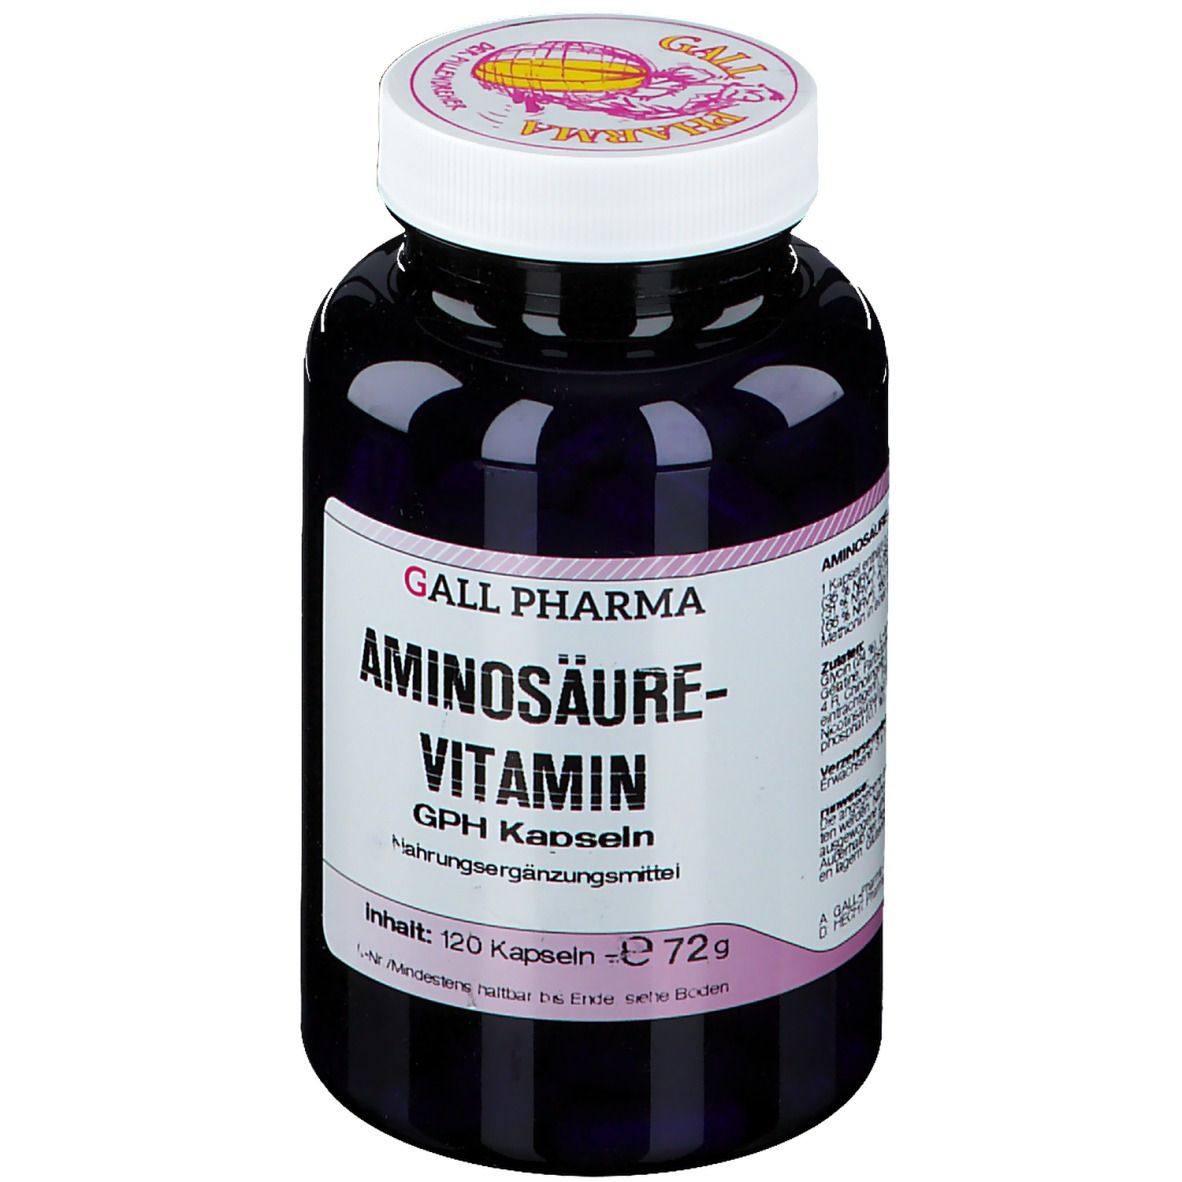 GALL PHARMA Aminosäure-Vitamin GPH Kapseln